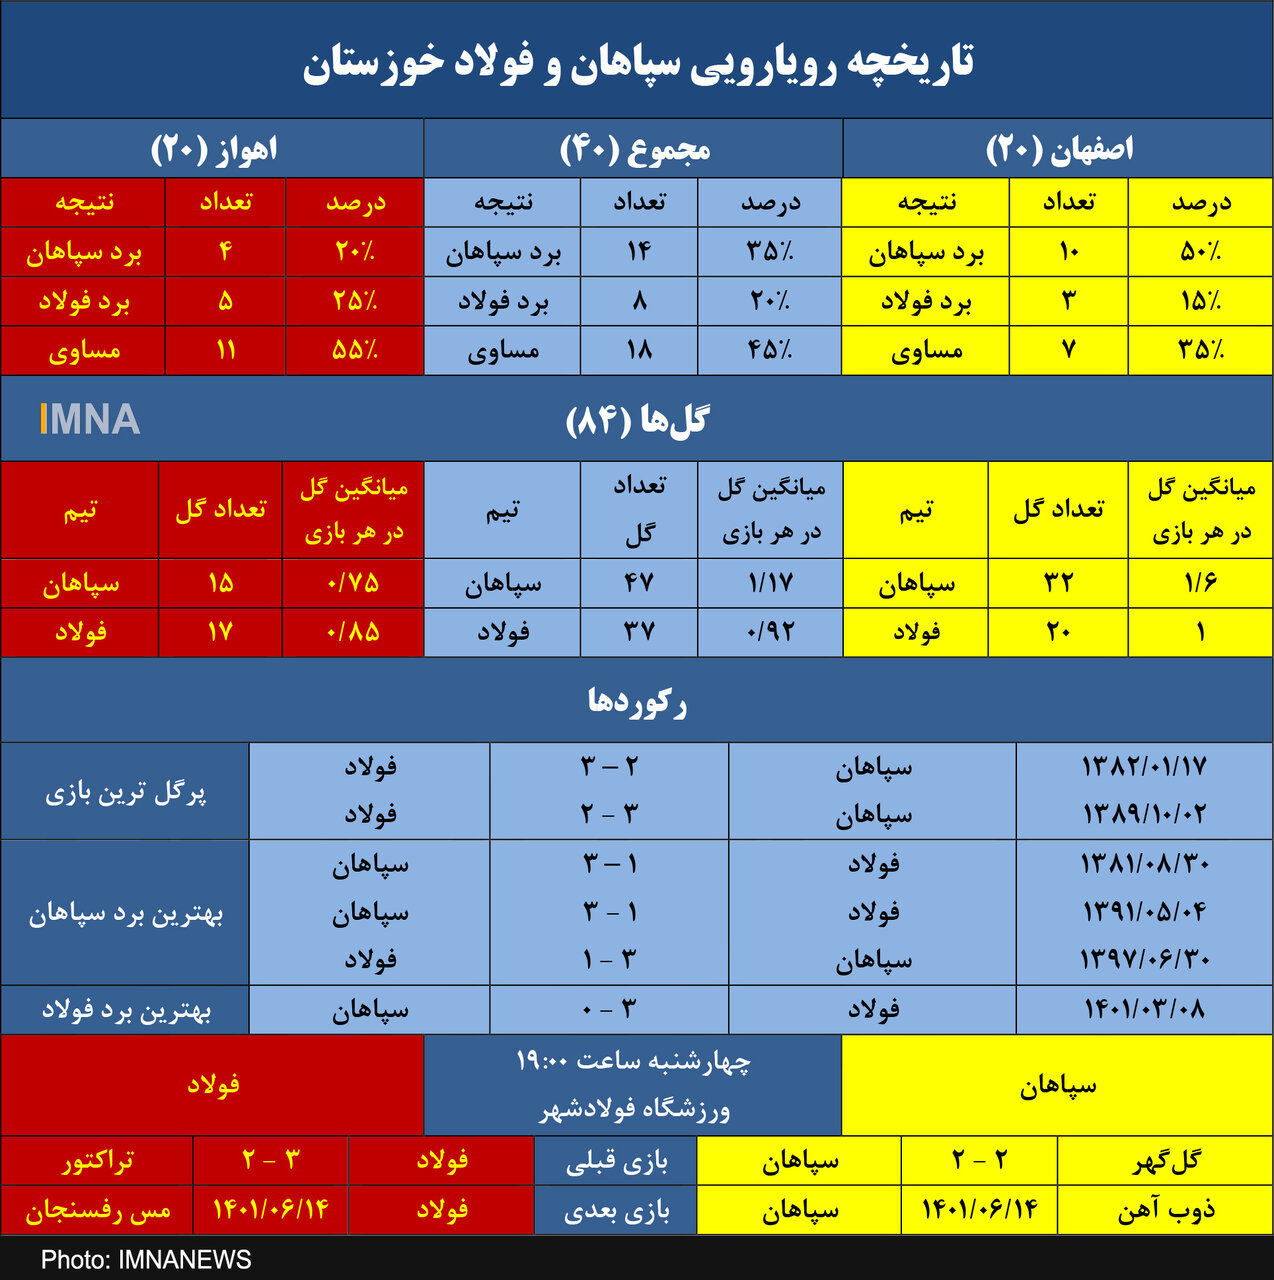 سپاهان به دنبال یازدهمین برد برابر فولاد در اصفهان+ جدول